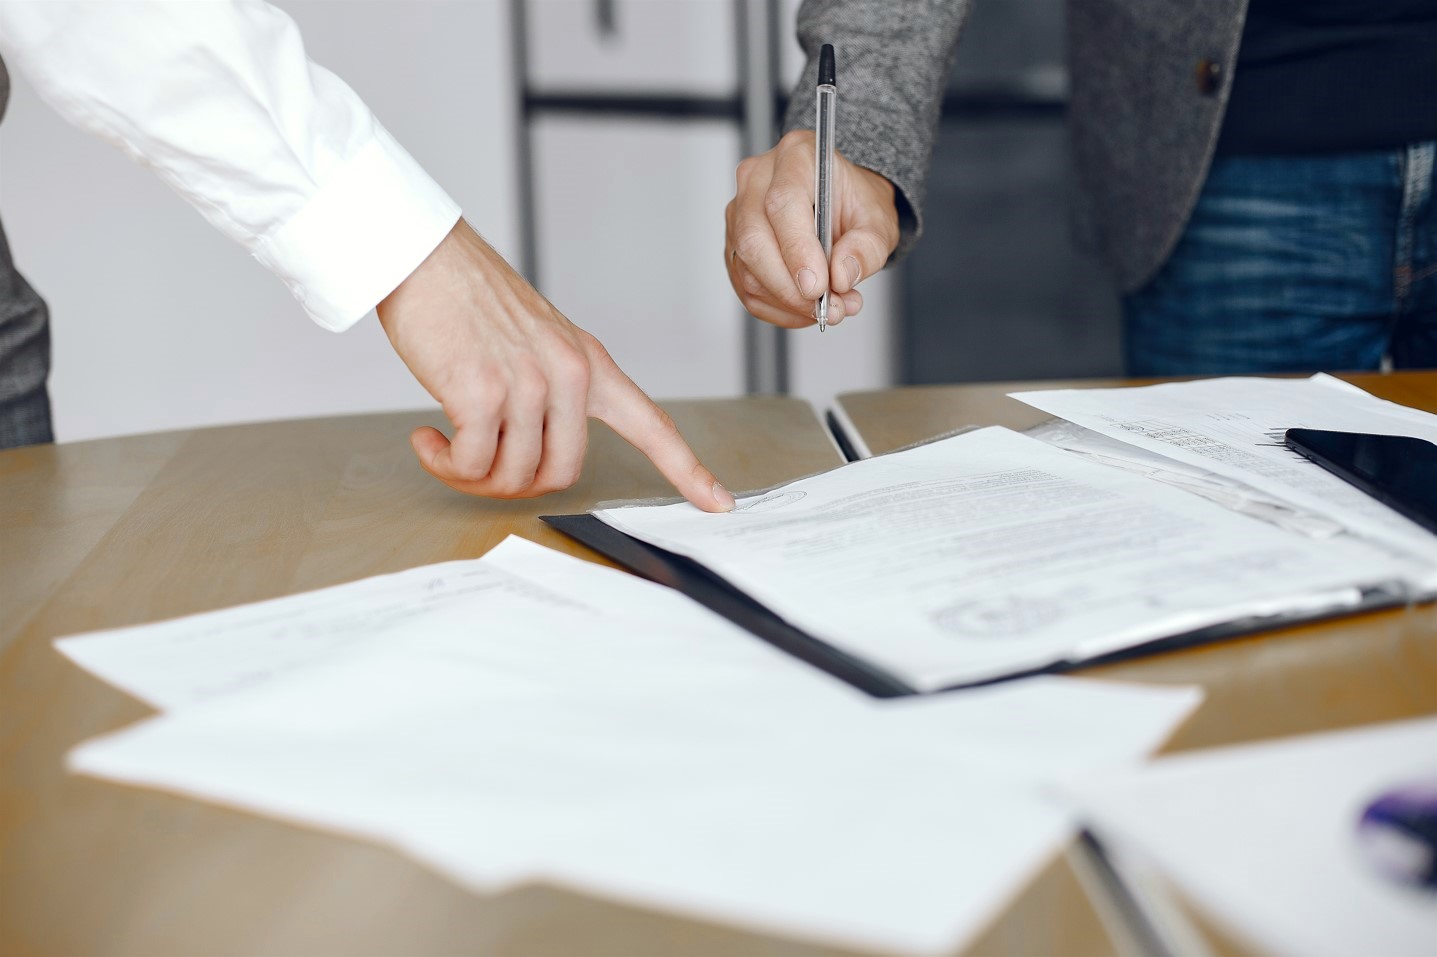 Una mano acerca un bolígrafo para firmar un papel mientras otra mano señala el documento